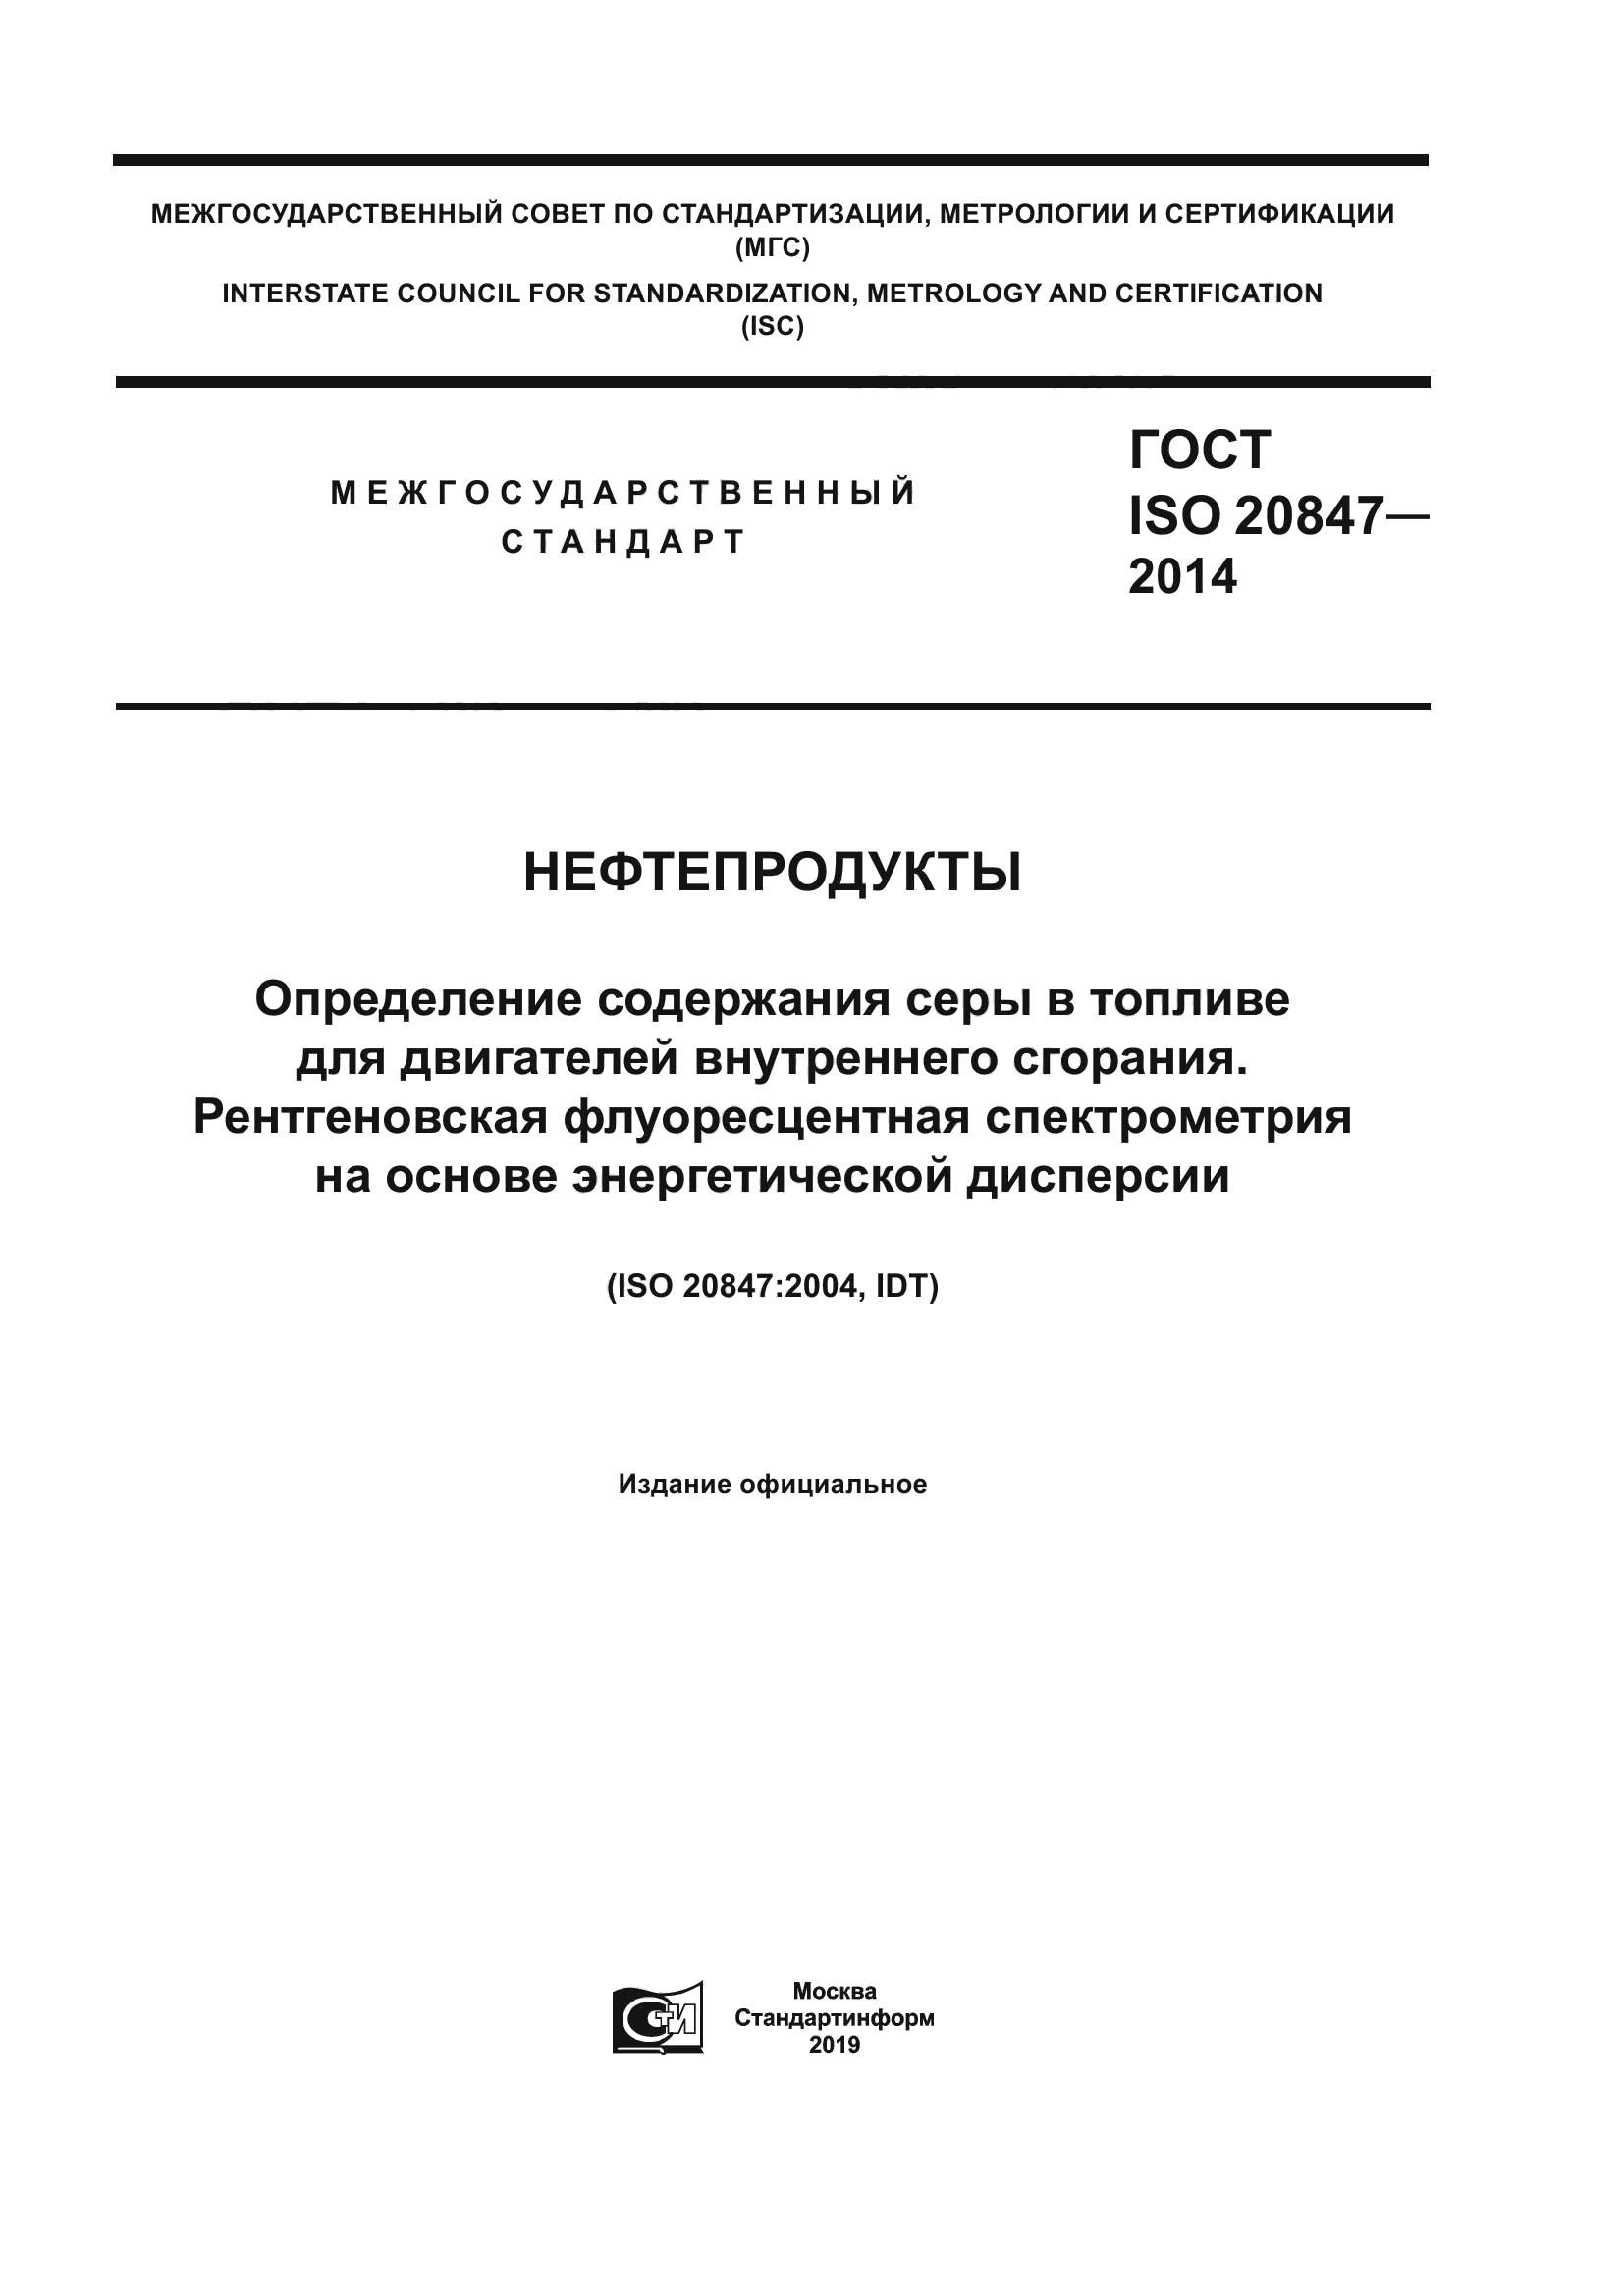 ГОСТ ISO 20847-2014